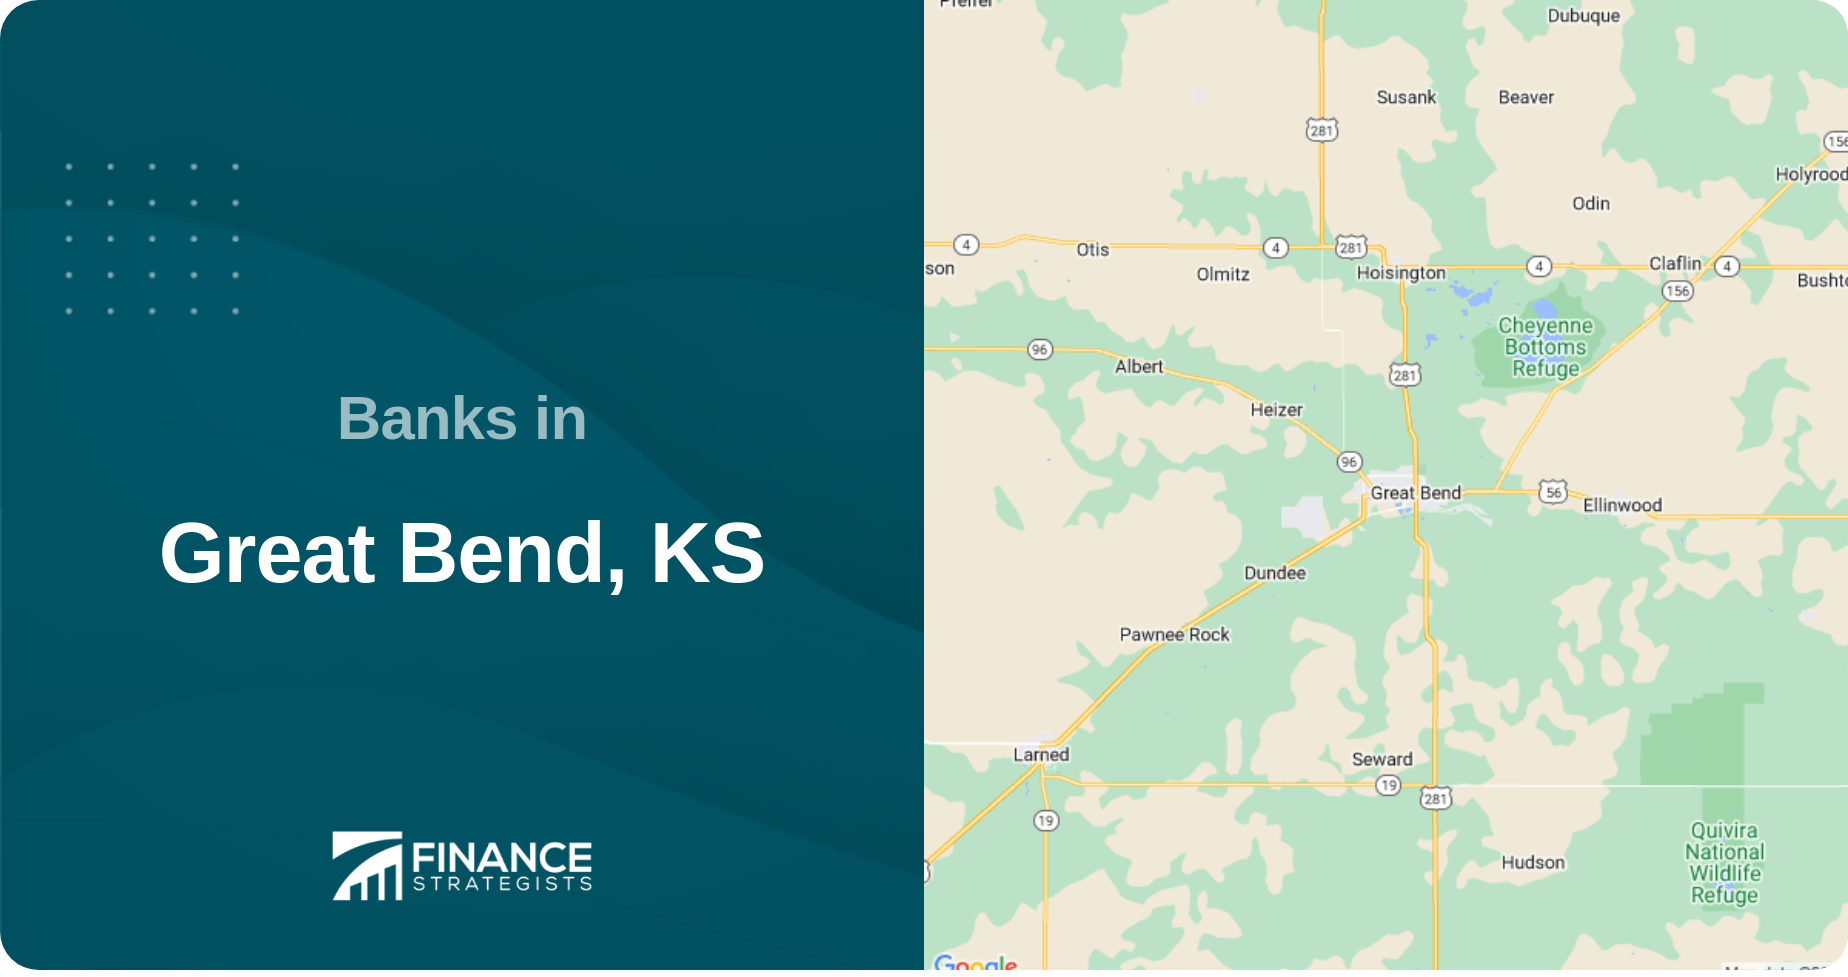 Banks in Great Bend, KS